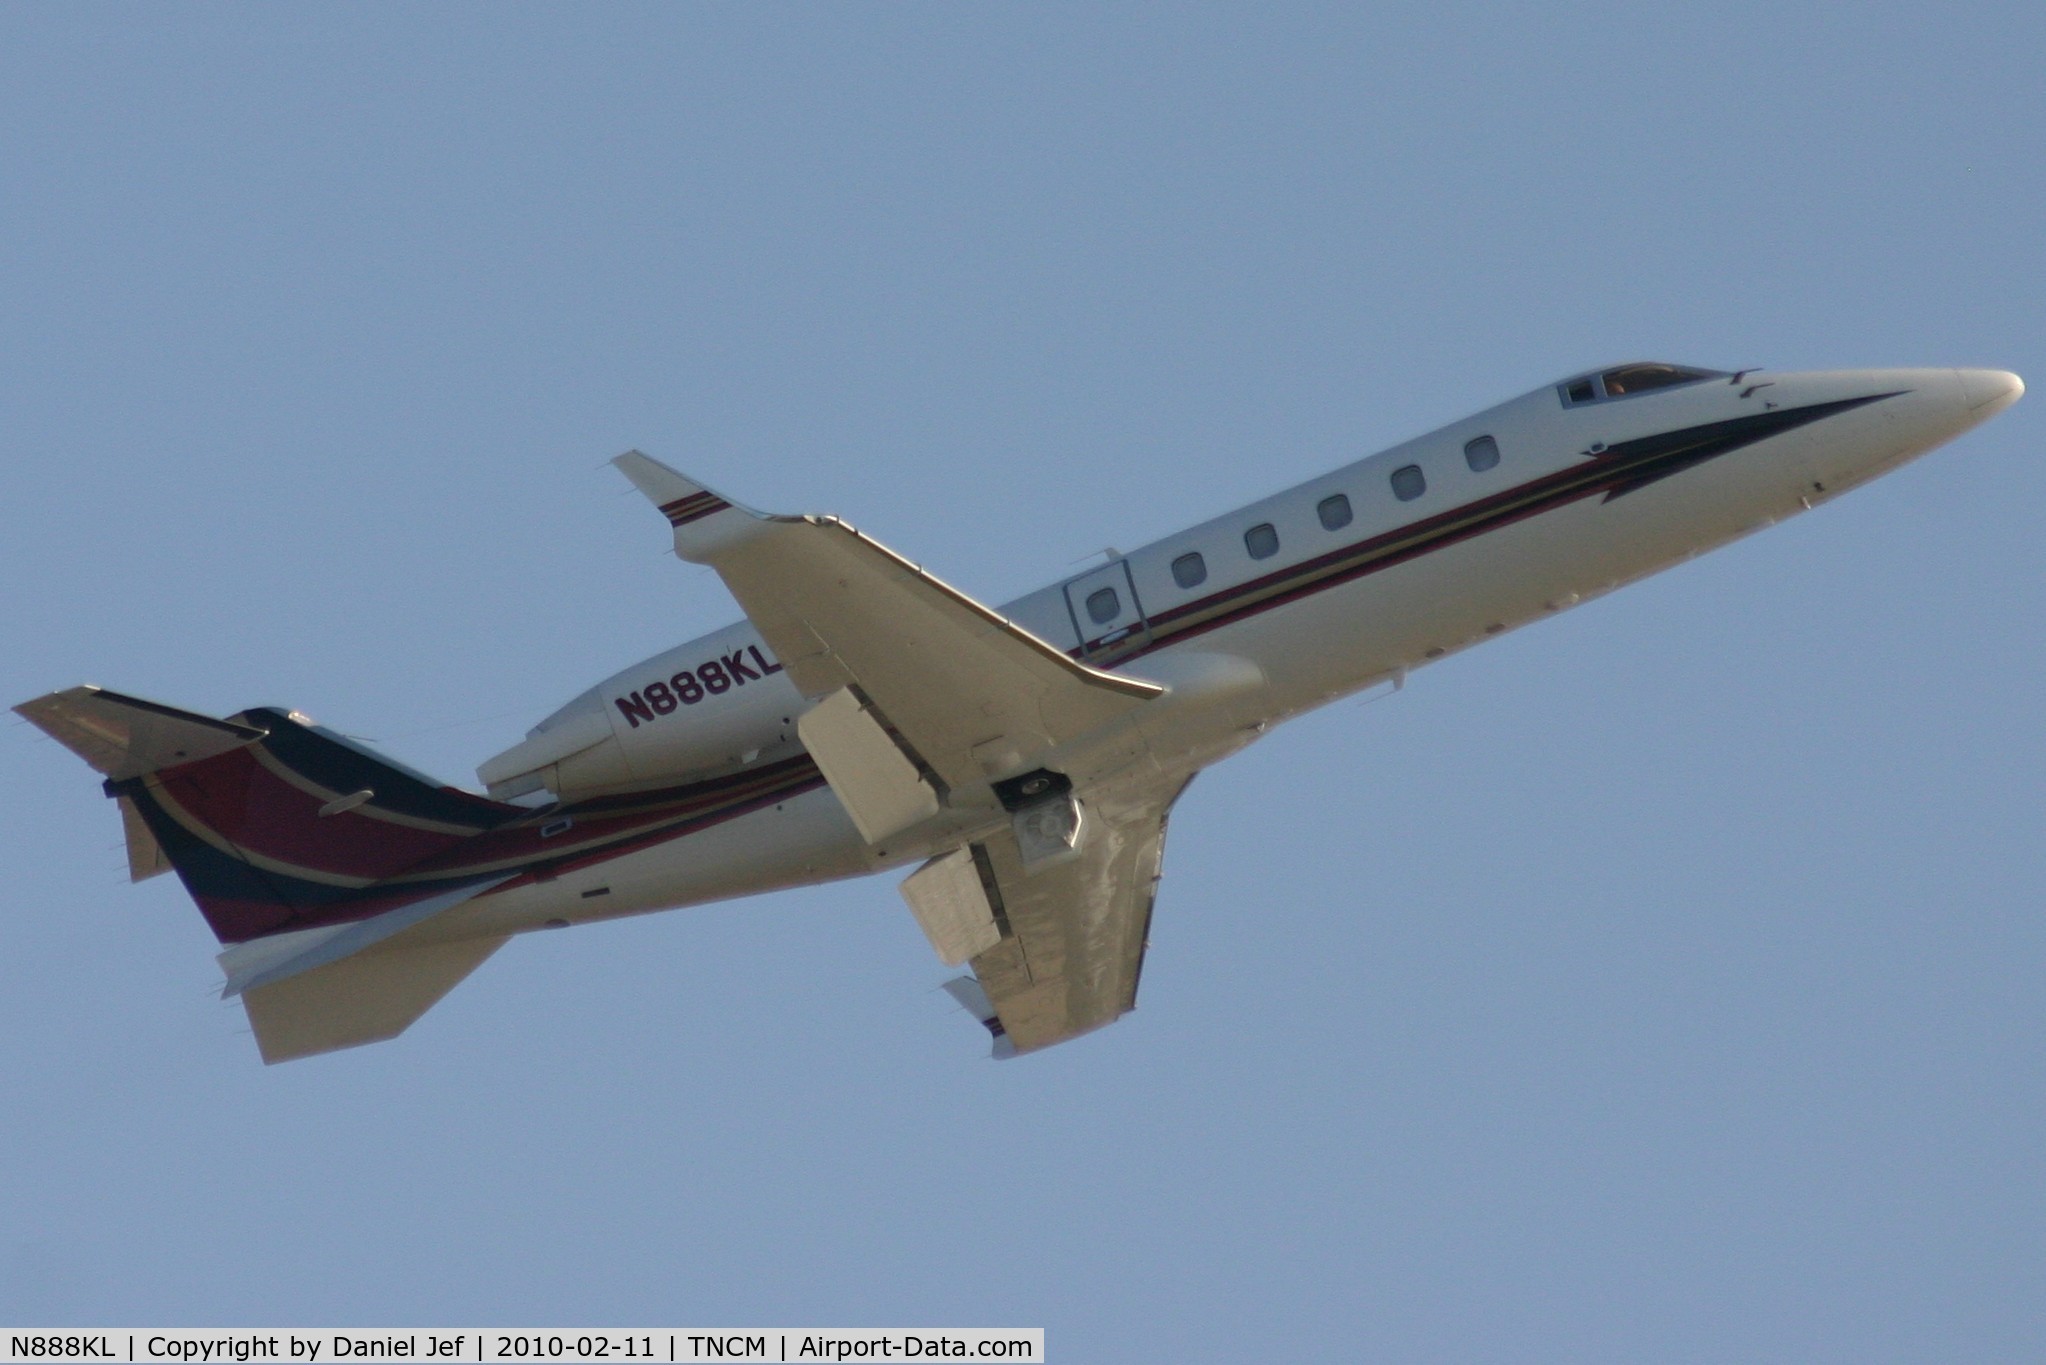 N888KL, 1998 Learjet 60 C/N 141, N888KL departing TNCM